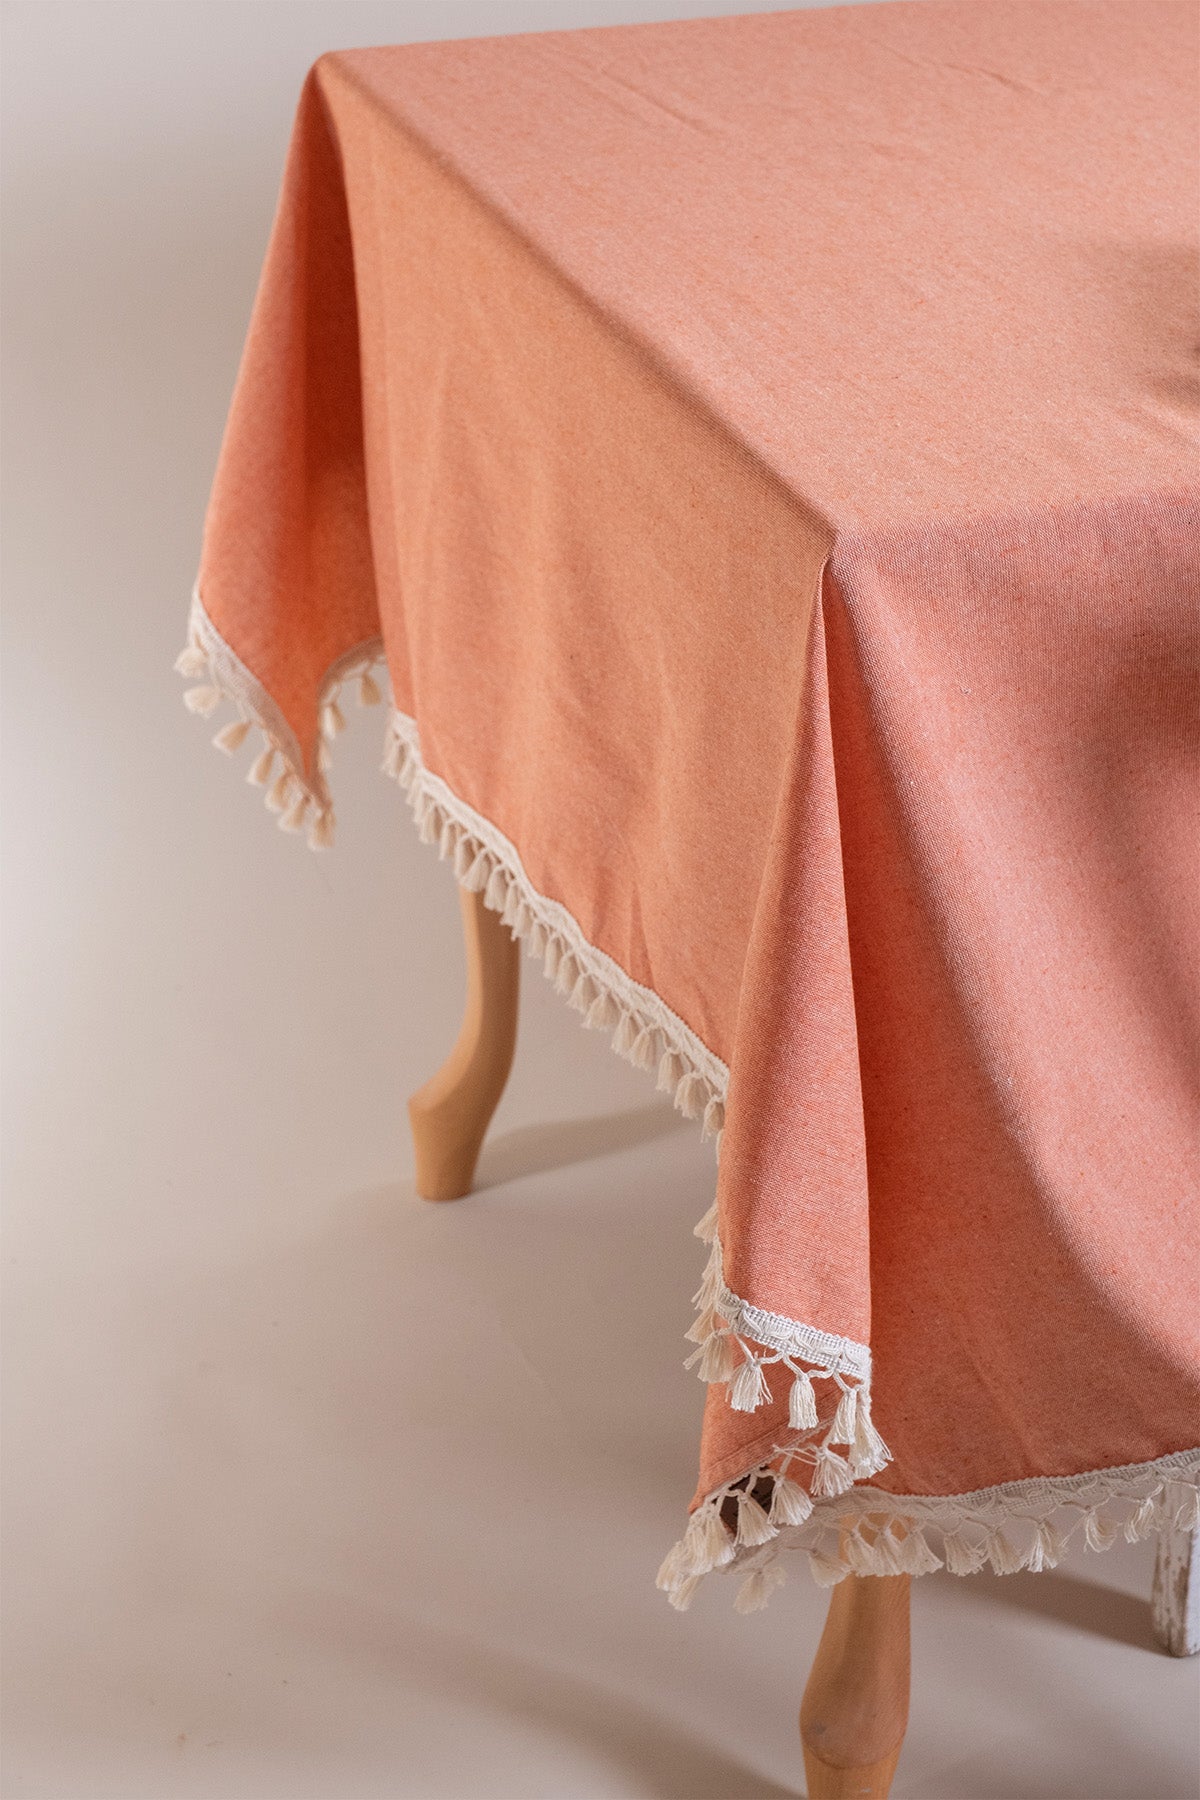 textile, tablecloth, table, cotton tablecloth, checkered tablecloth, kitchen linens, kithchen textile